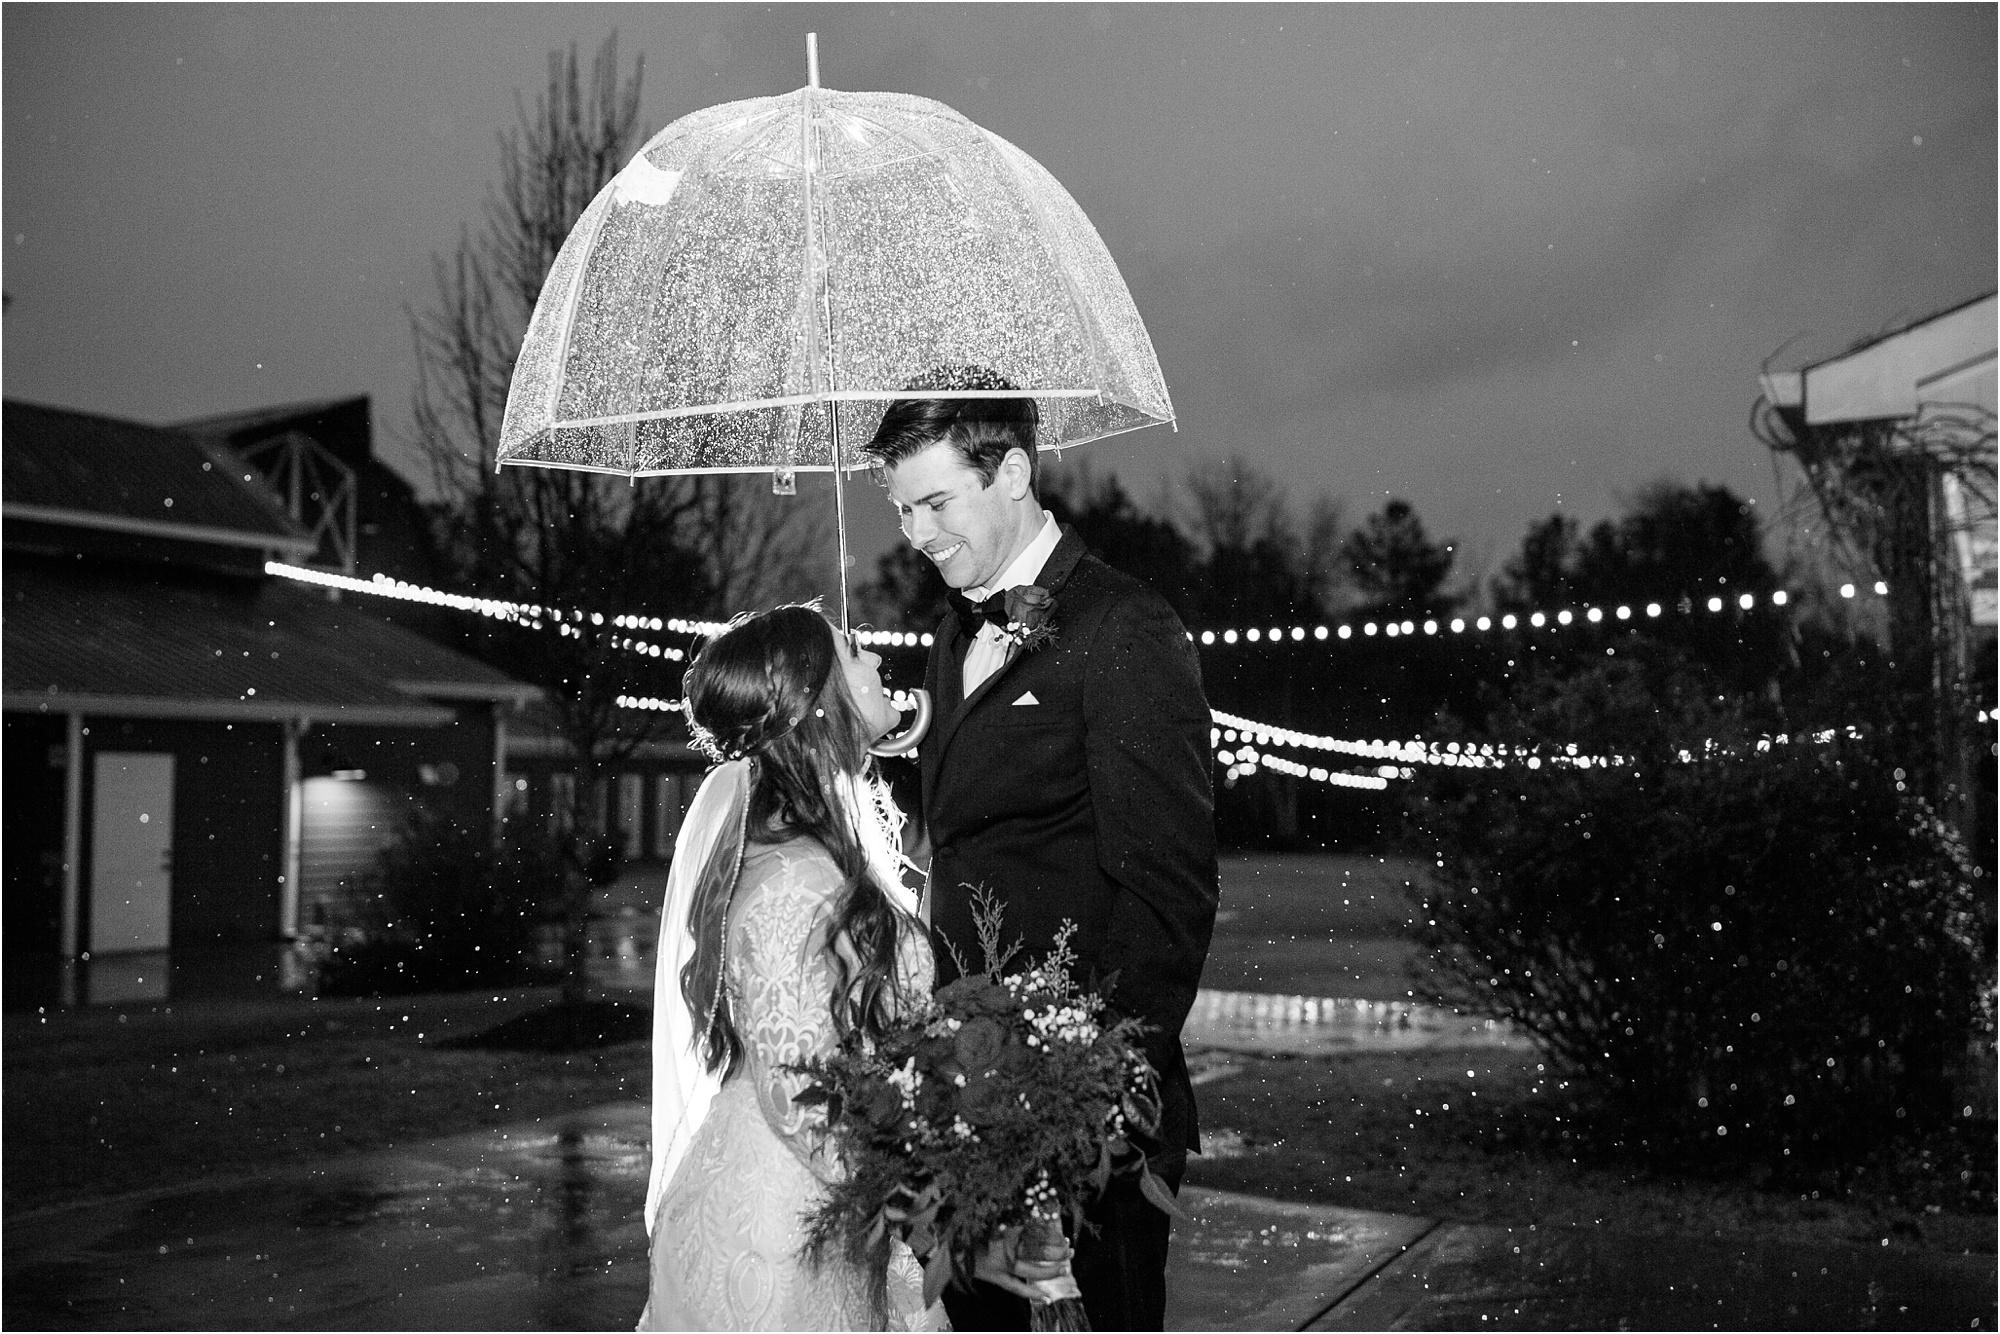 9 oaks farm wedding stephaniegorephoto.com december christmas wedding rain